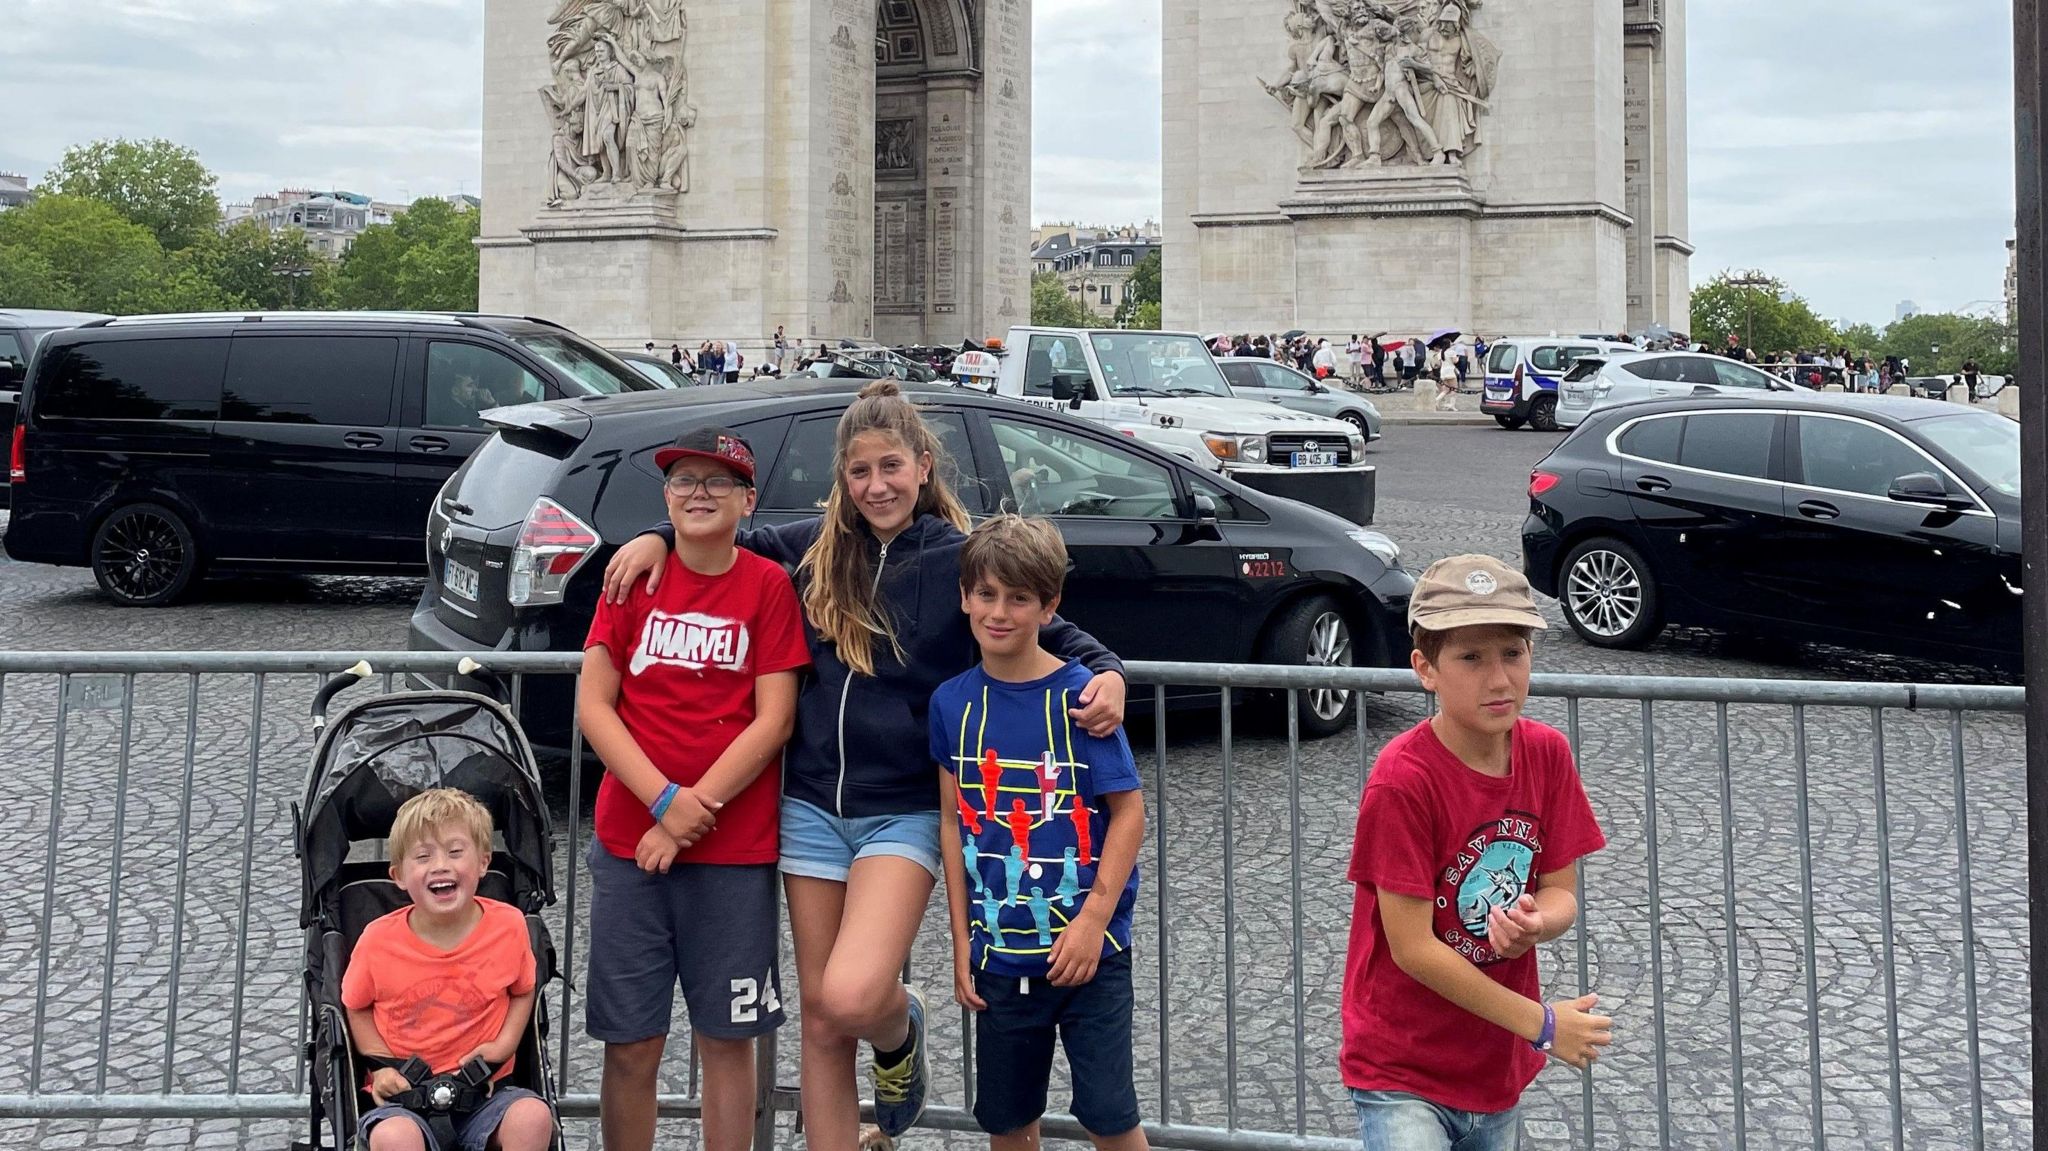 Children in Paris